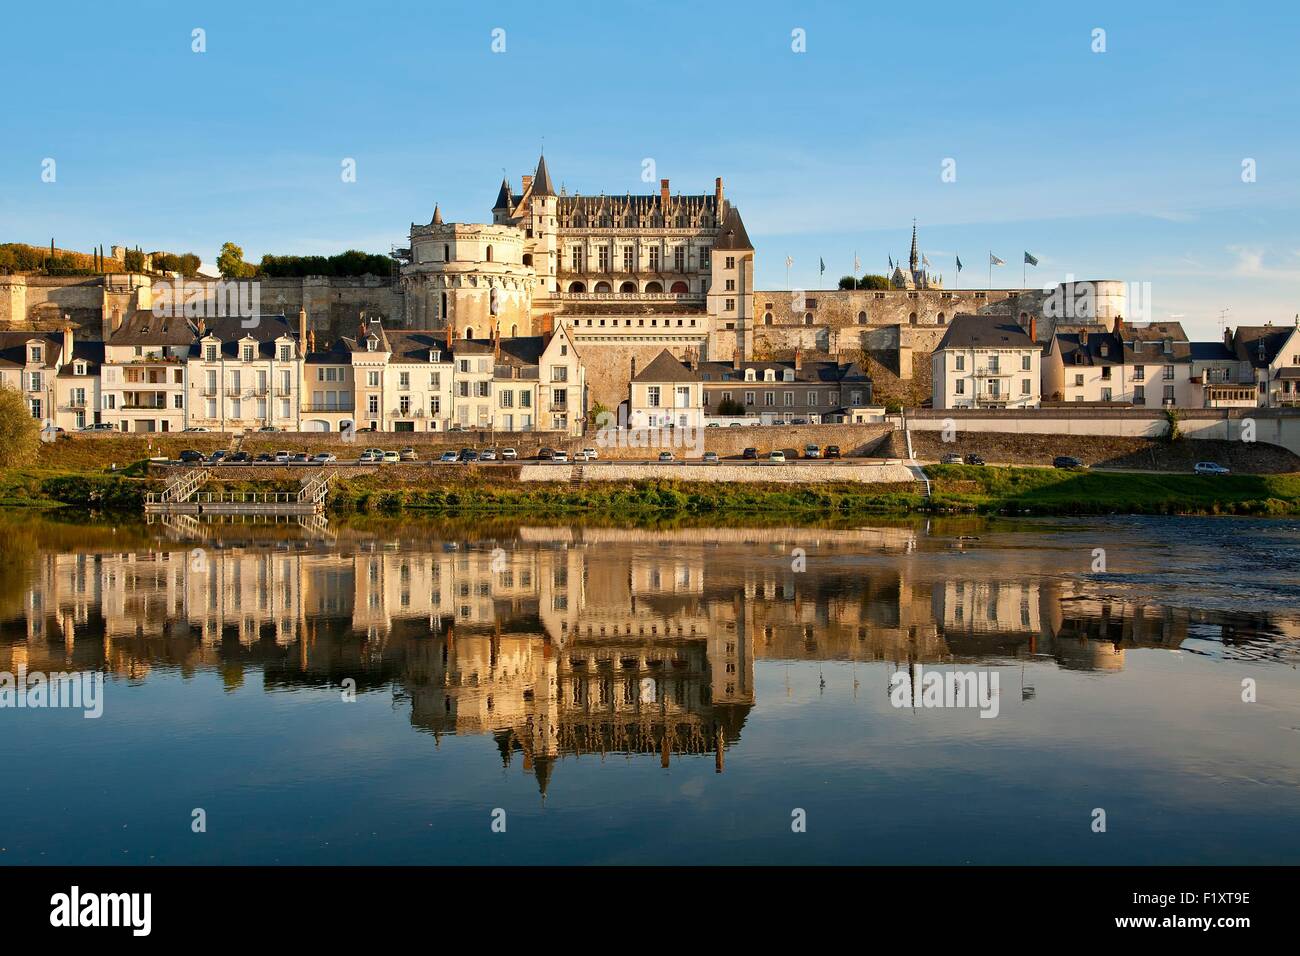 Francia, Indre et Loire, la Valle della Loira sono classificati come patrimonio mondiale dall' UNESCO, Chateau d'Amboise Foto Stock